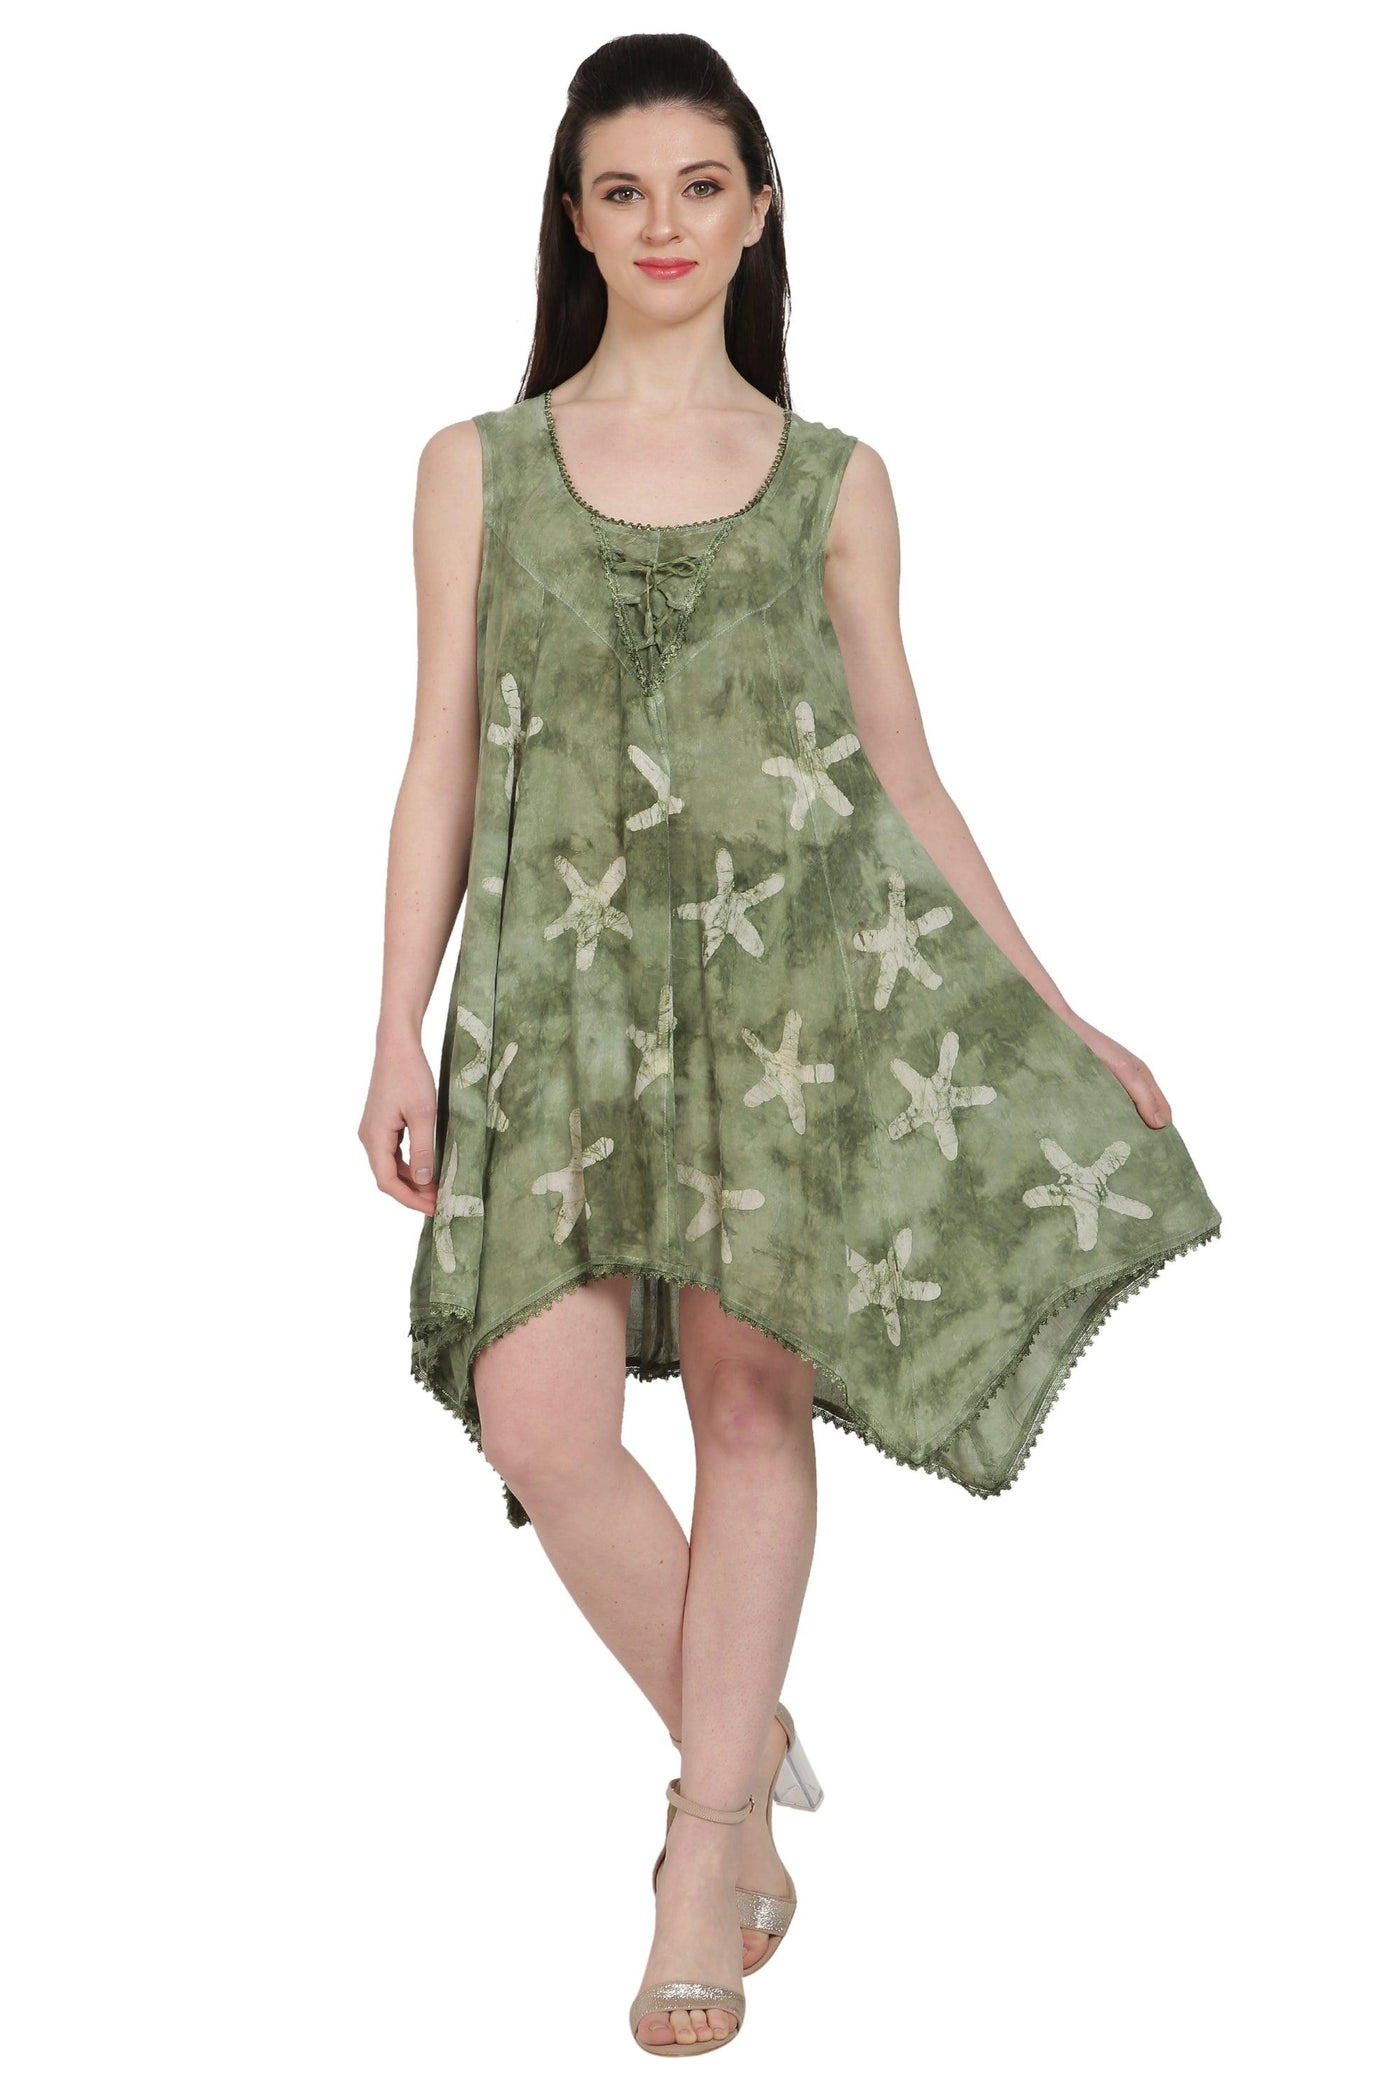 Starfish Block Print Dress 20721  - Advance Apparels Inc